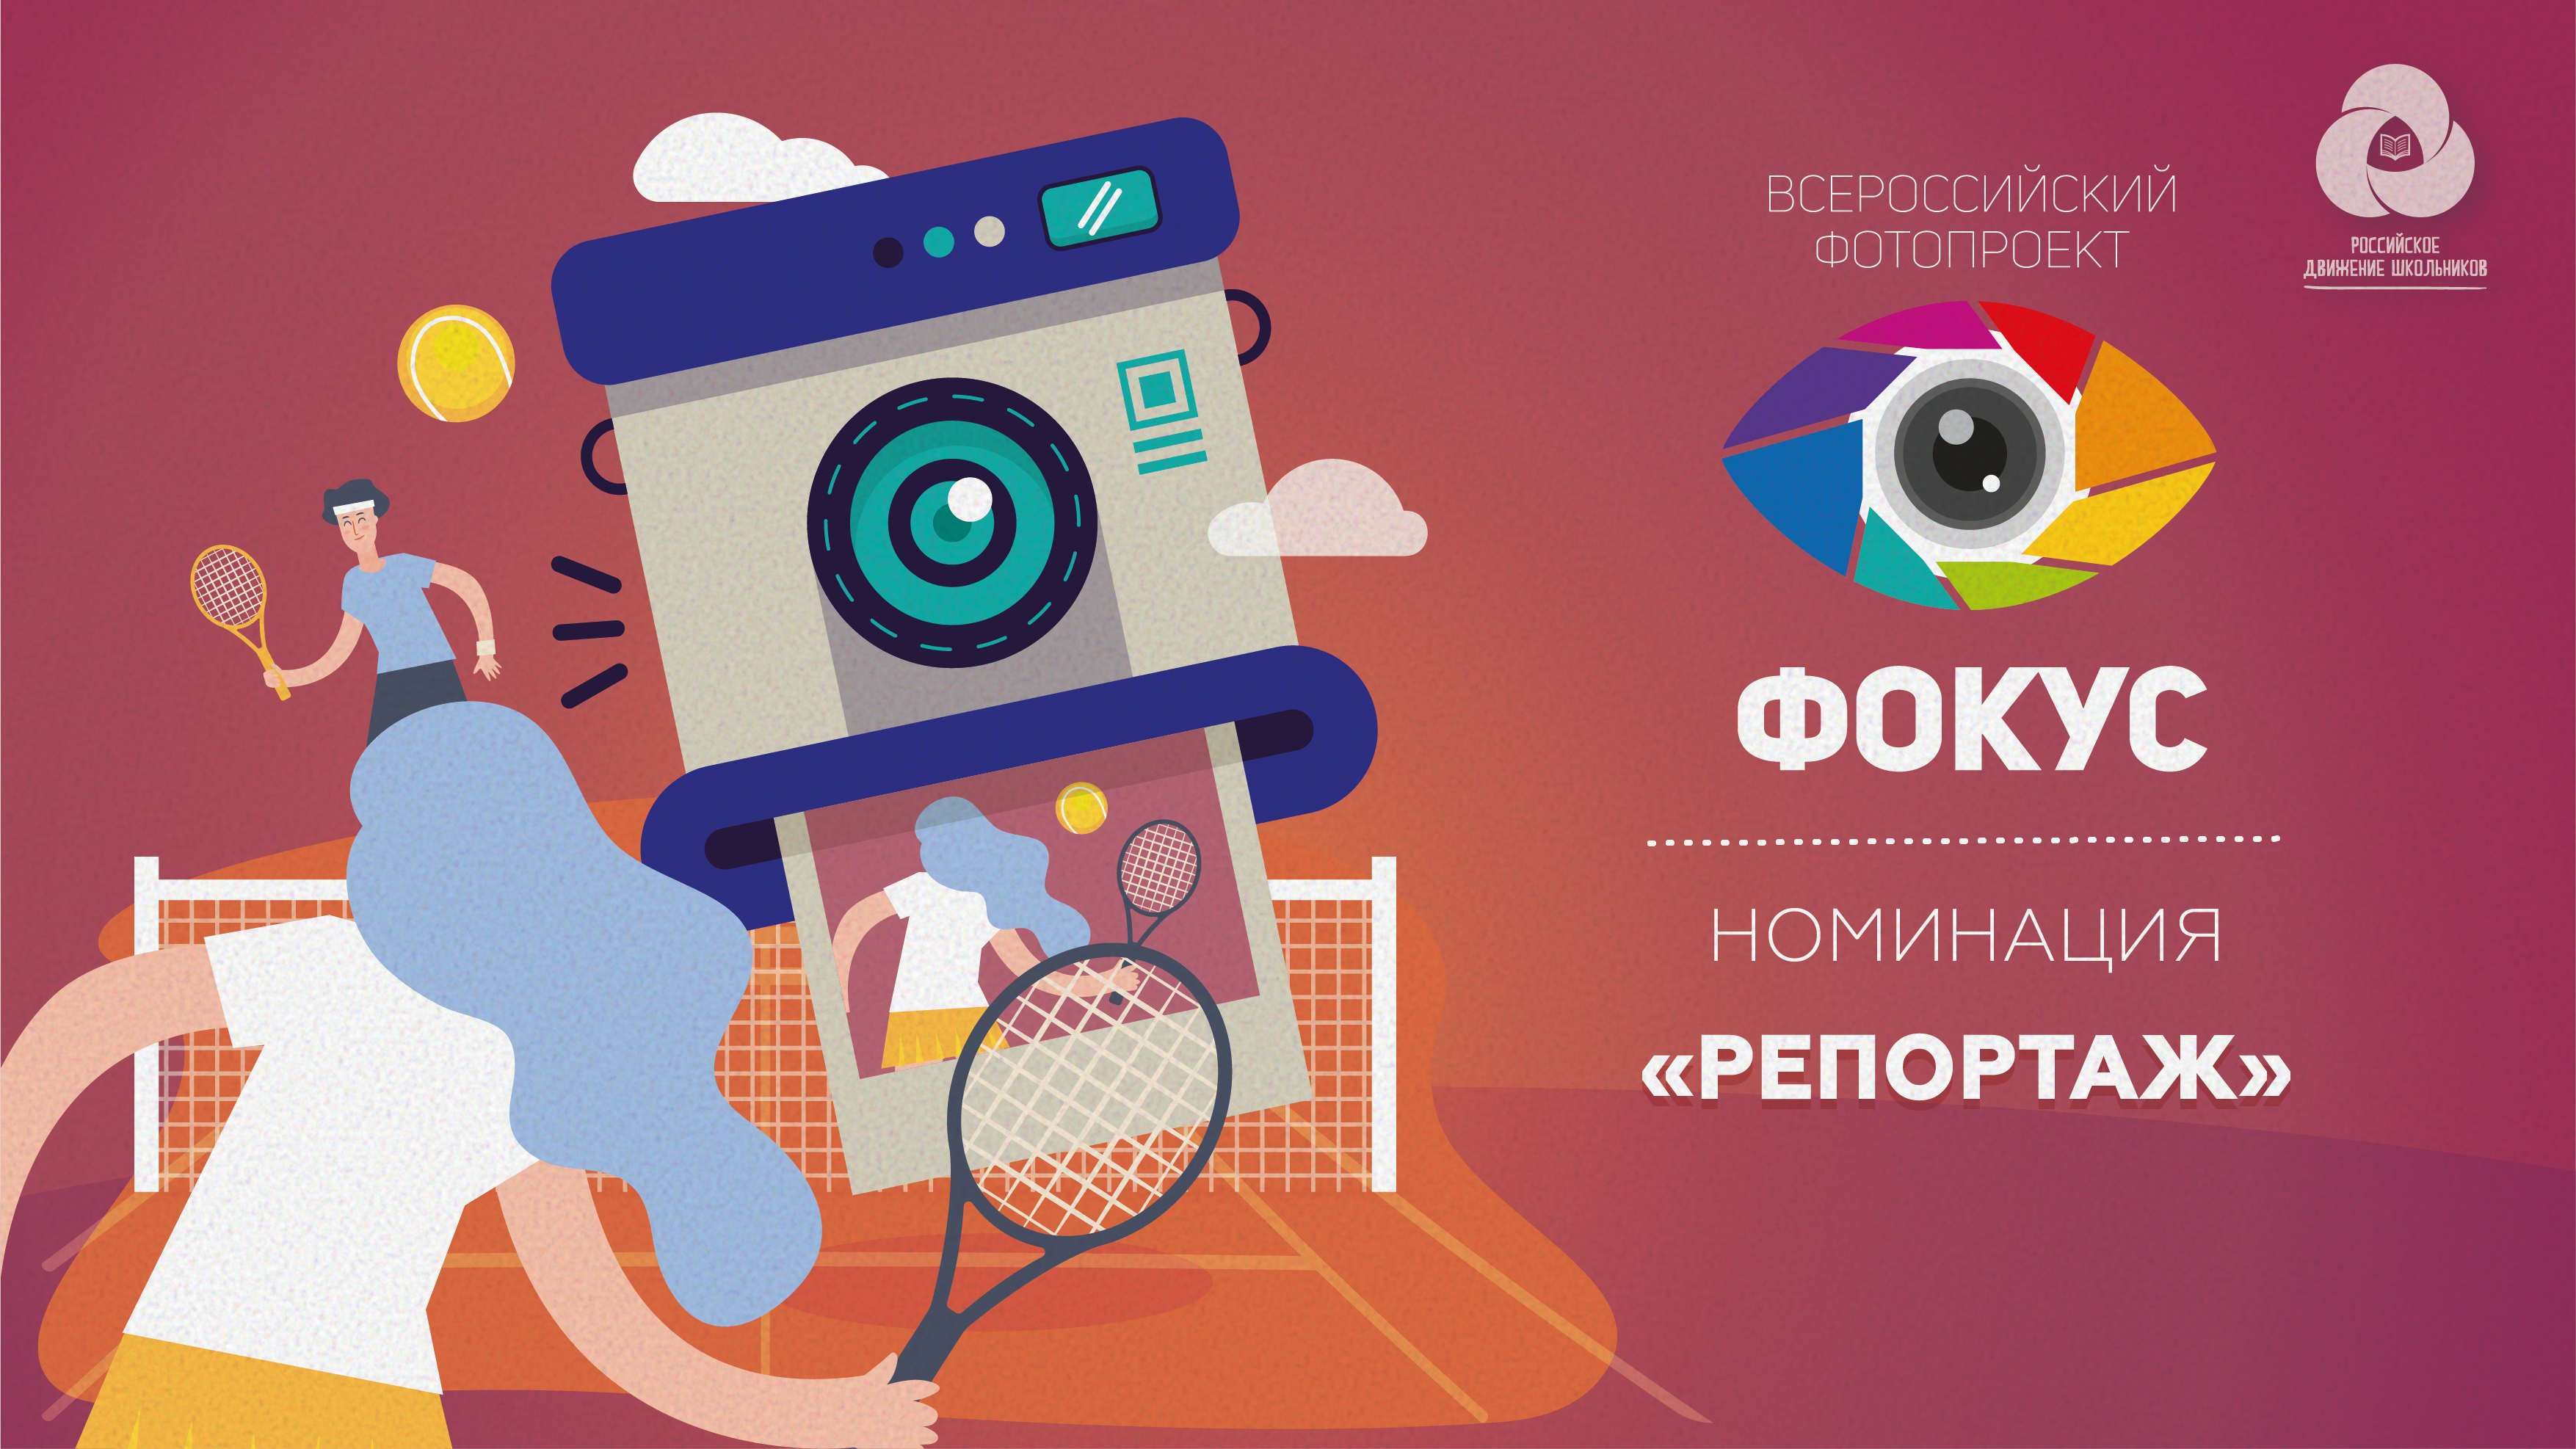 Всероссийский фотопроект «Фокус». Номинация «Репортаж»